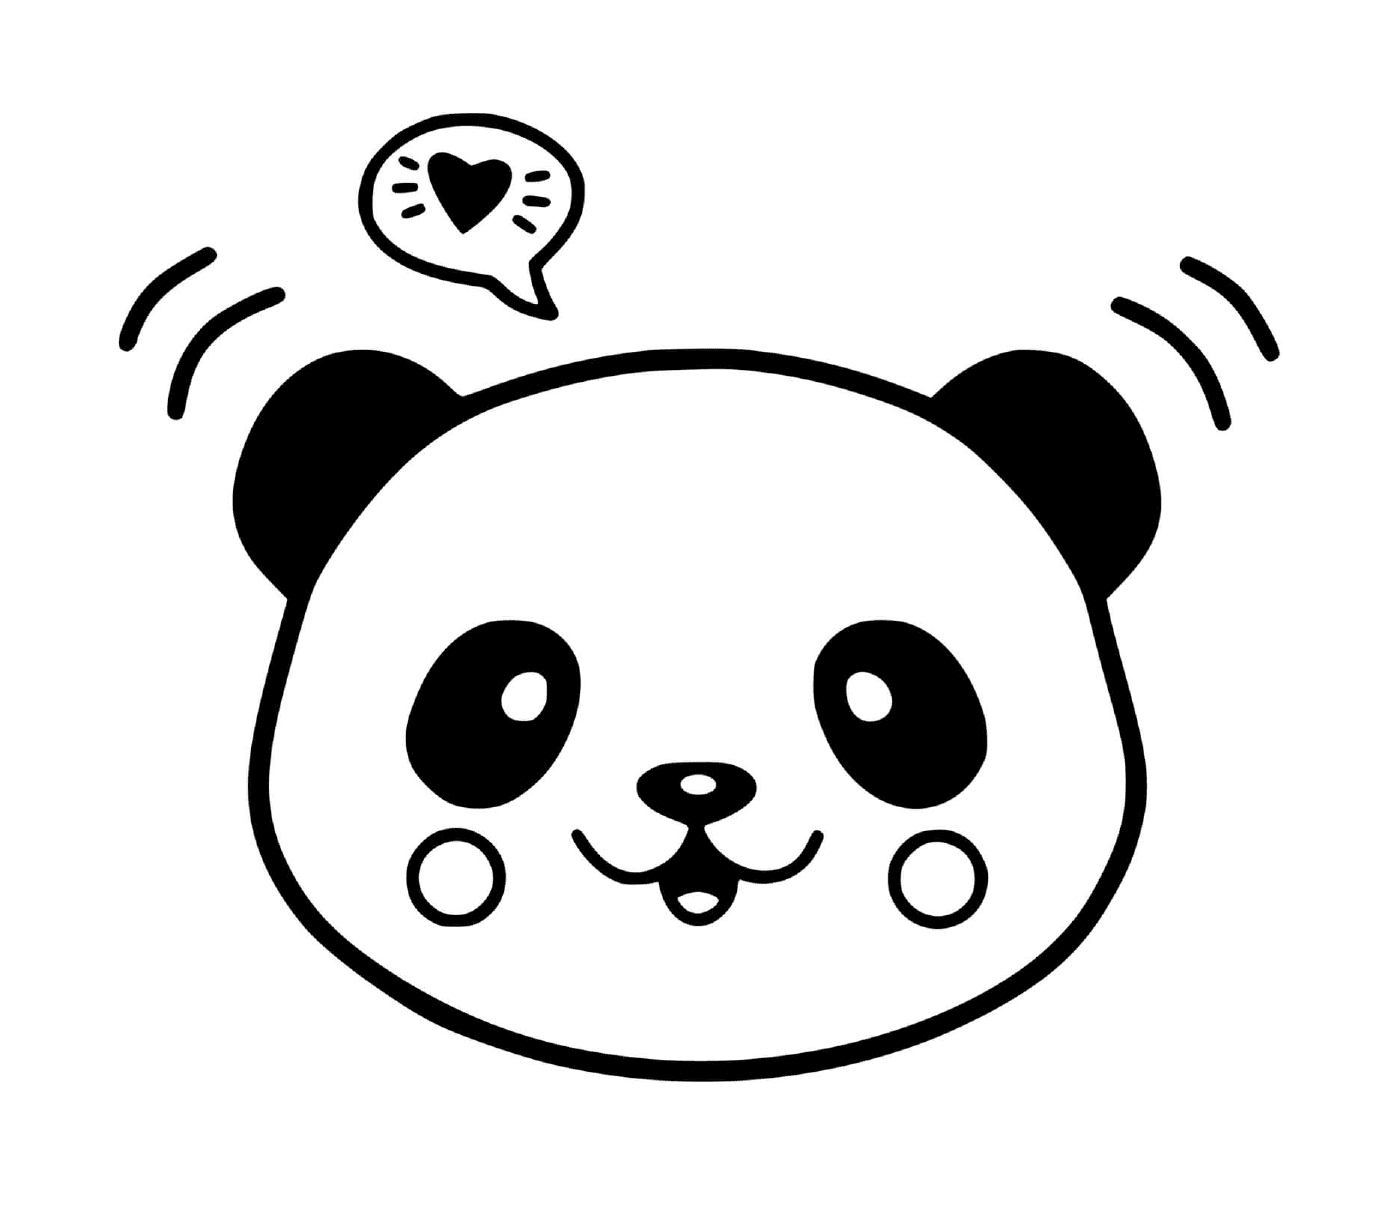   Un panda mignon 